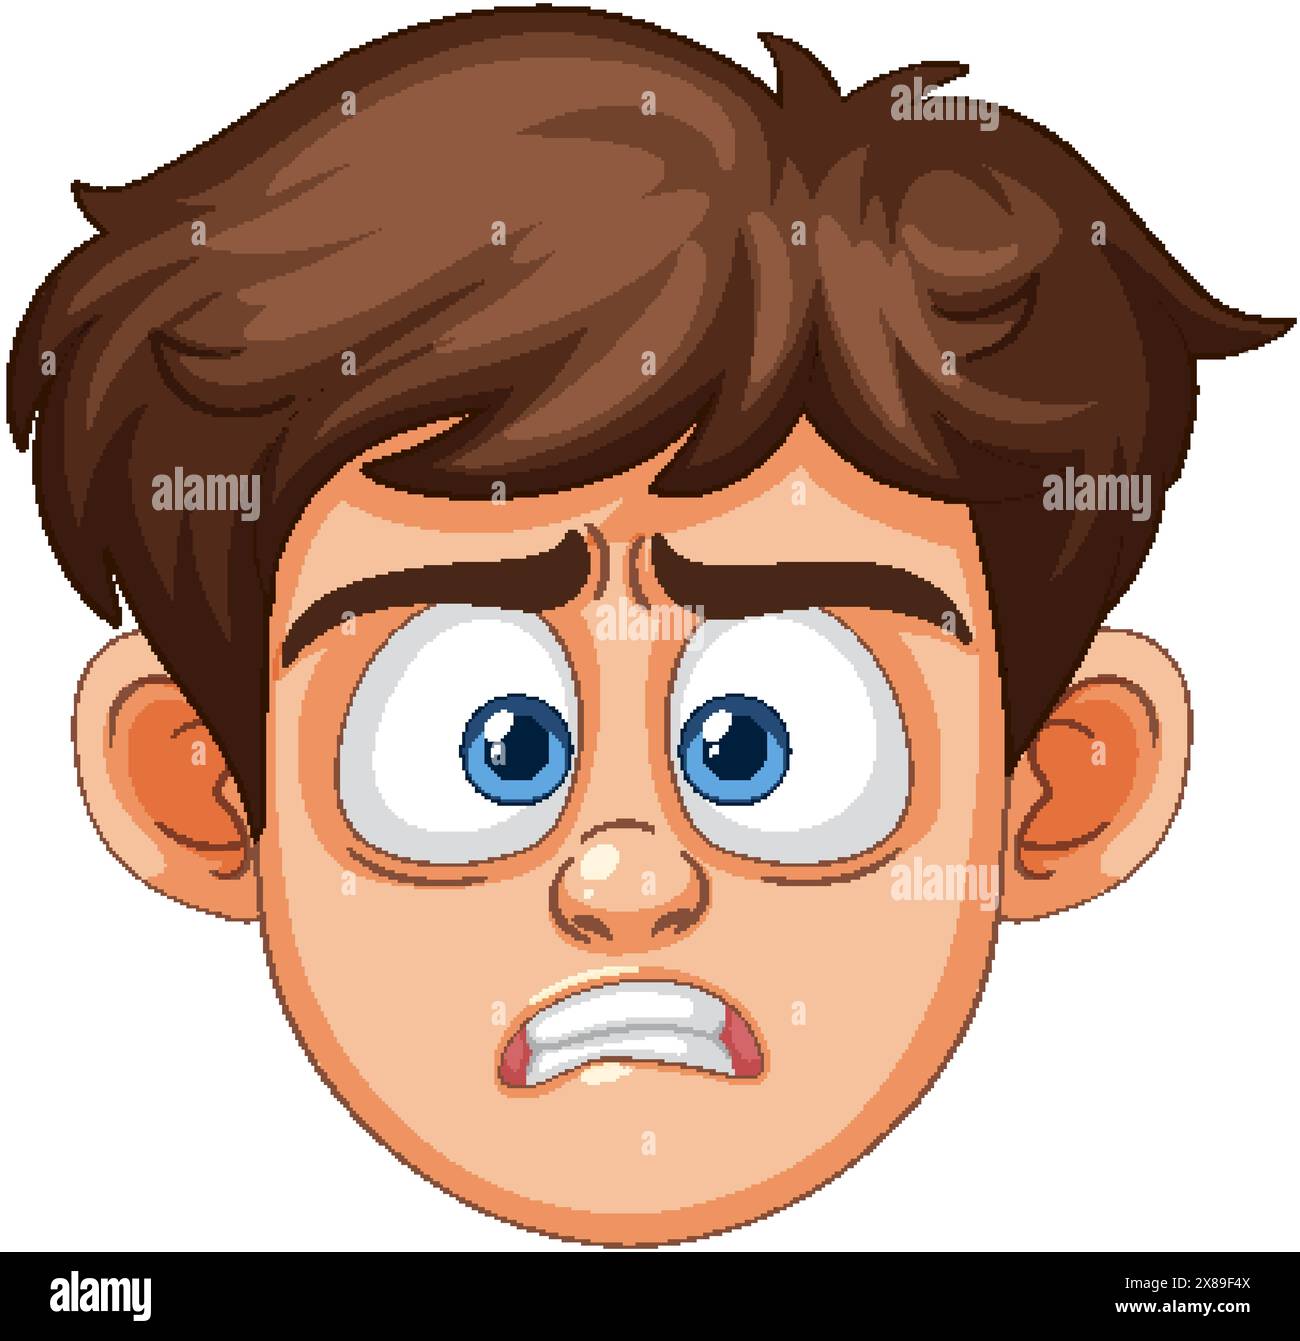 A cartoon boy with a worried face Stock Vector